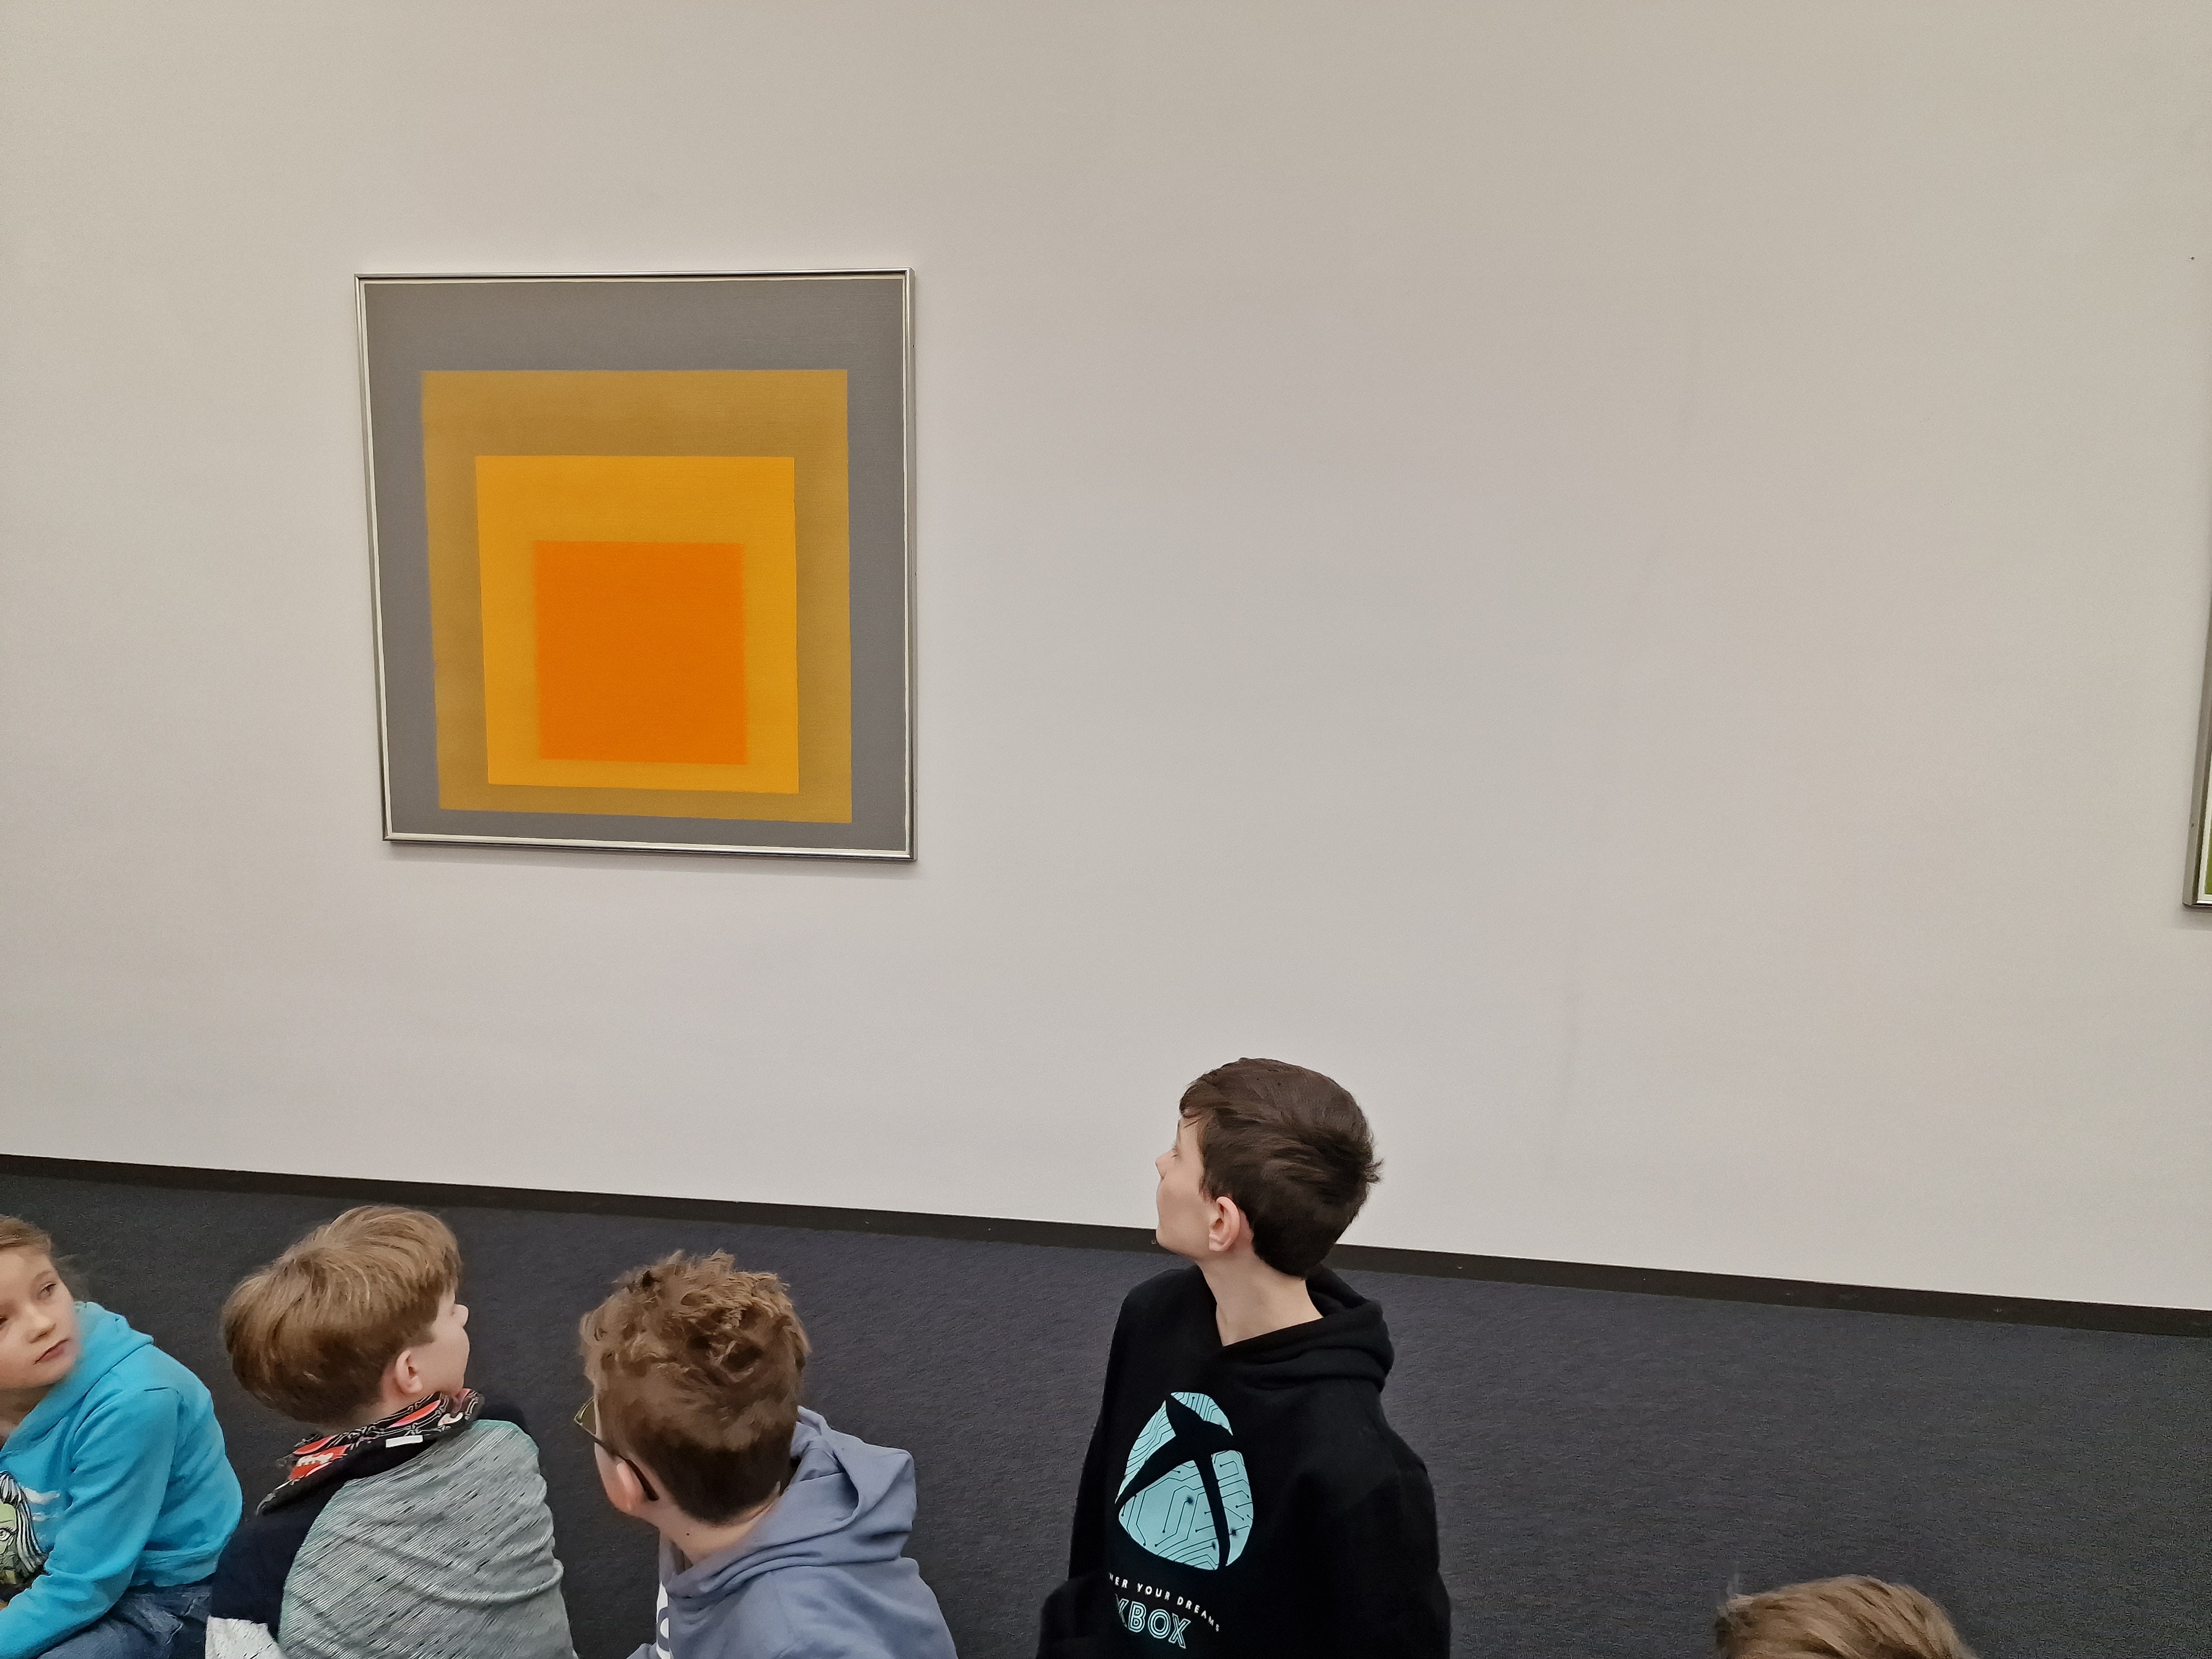 Ein Junge schaut auf ein orangefarbenes Quadrat